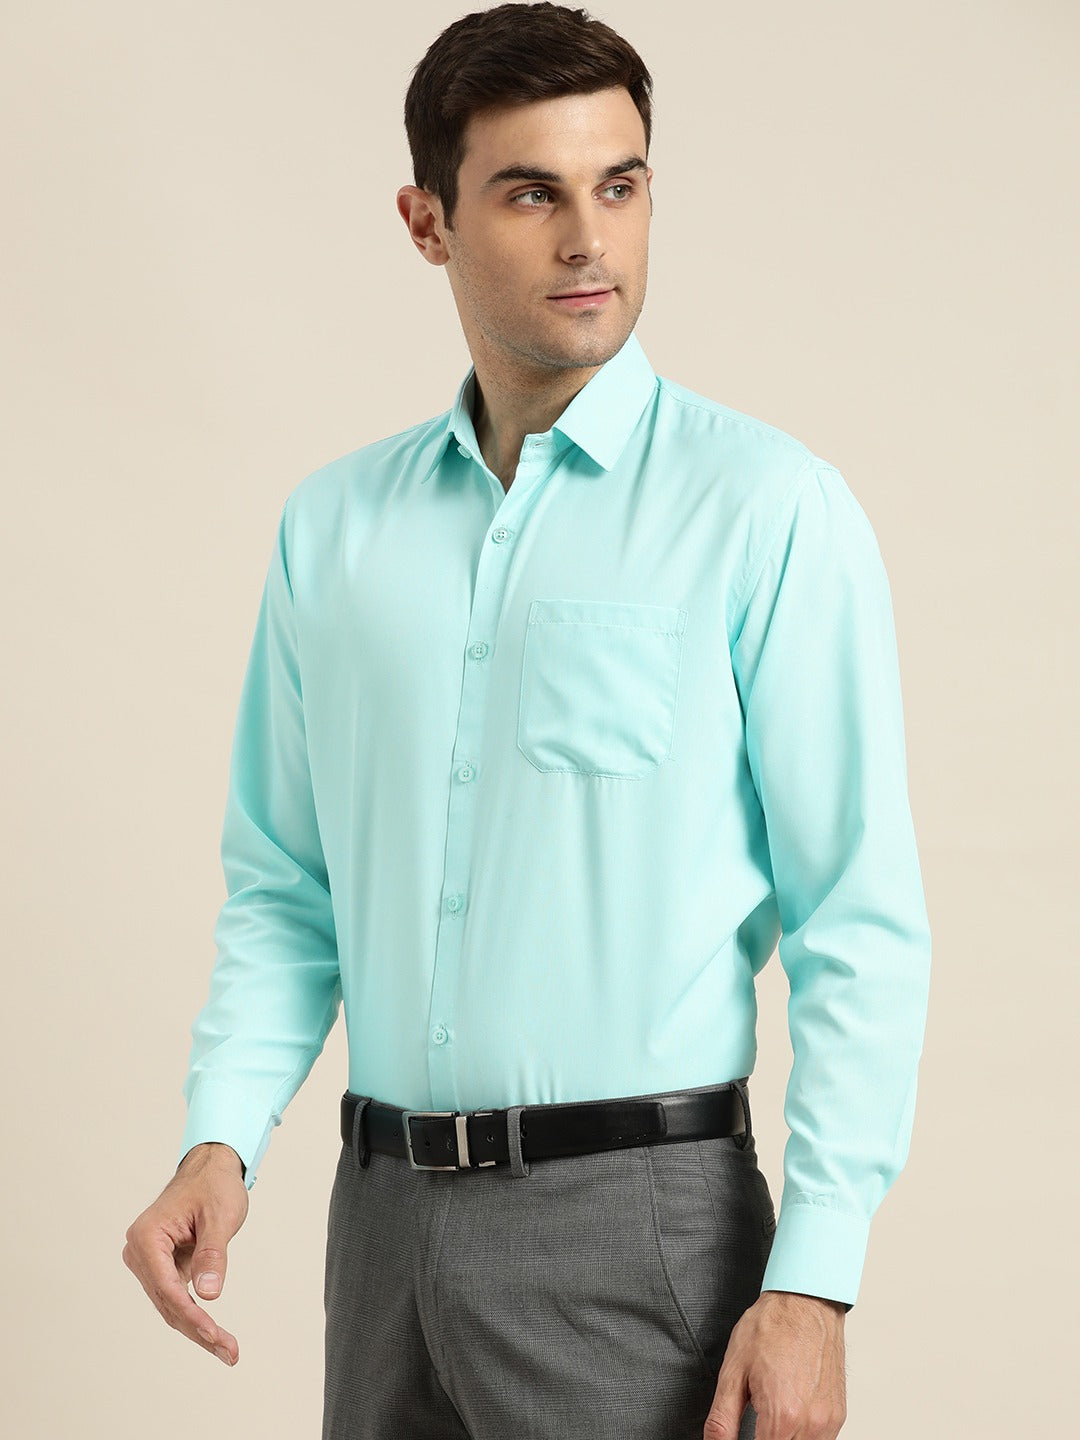 Men's Cotton Turquoise Blue Casual Shirt